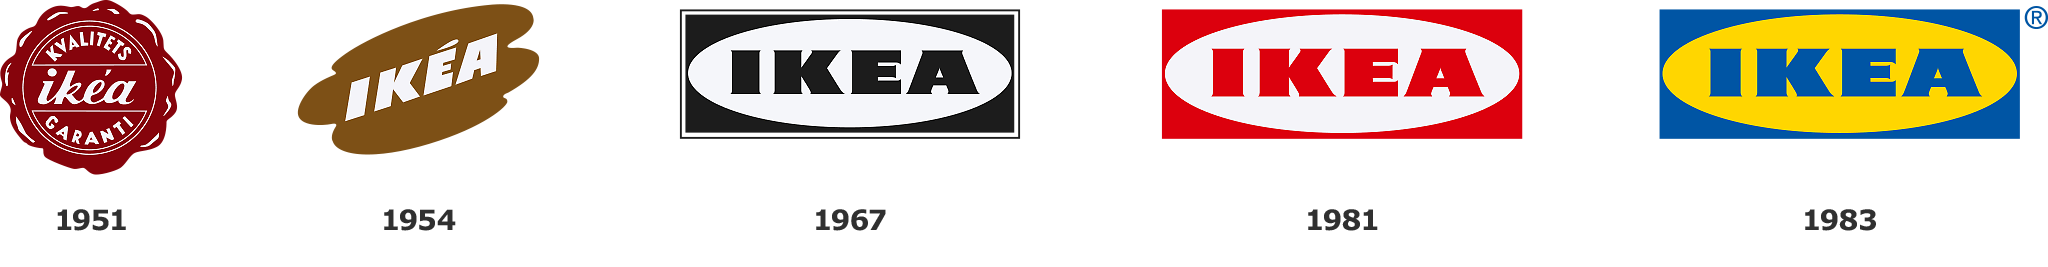 IKEA logo development